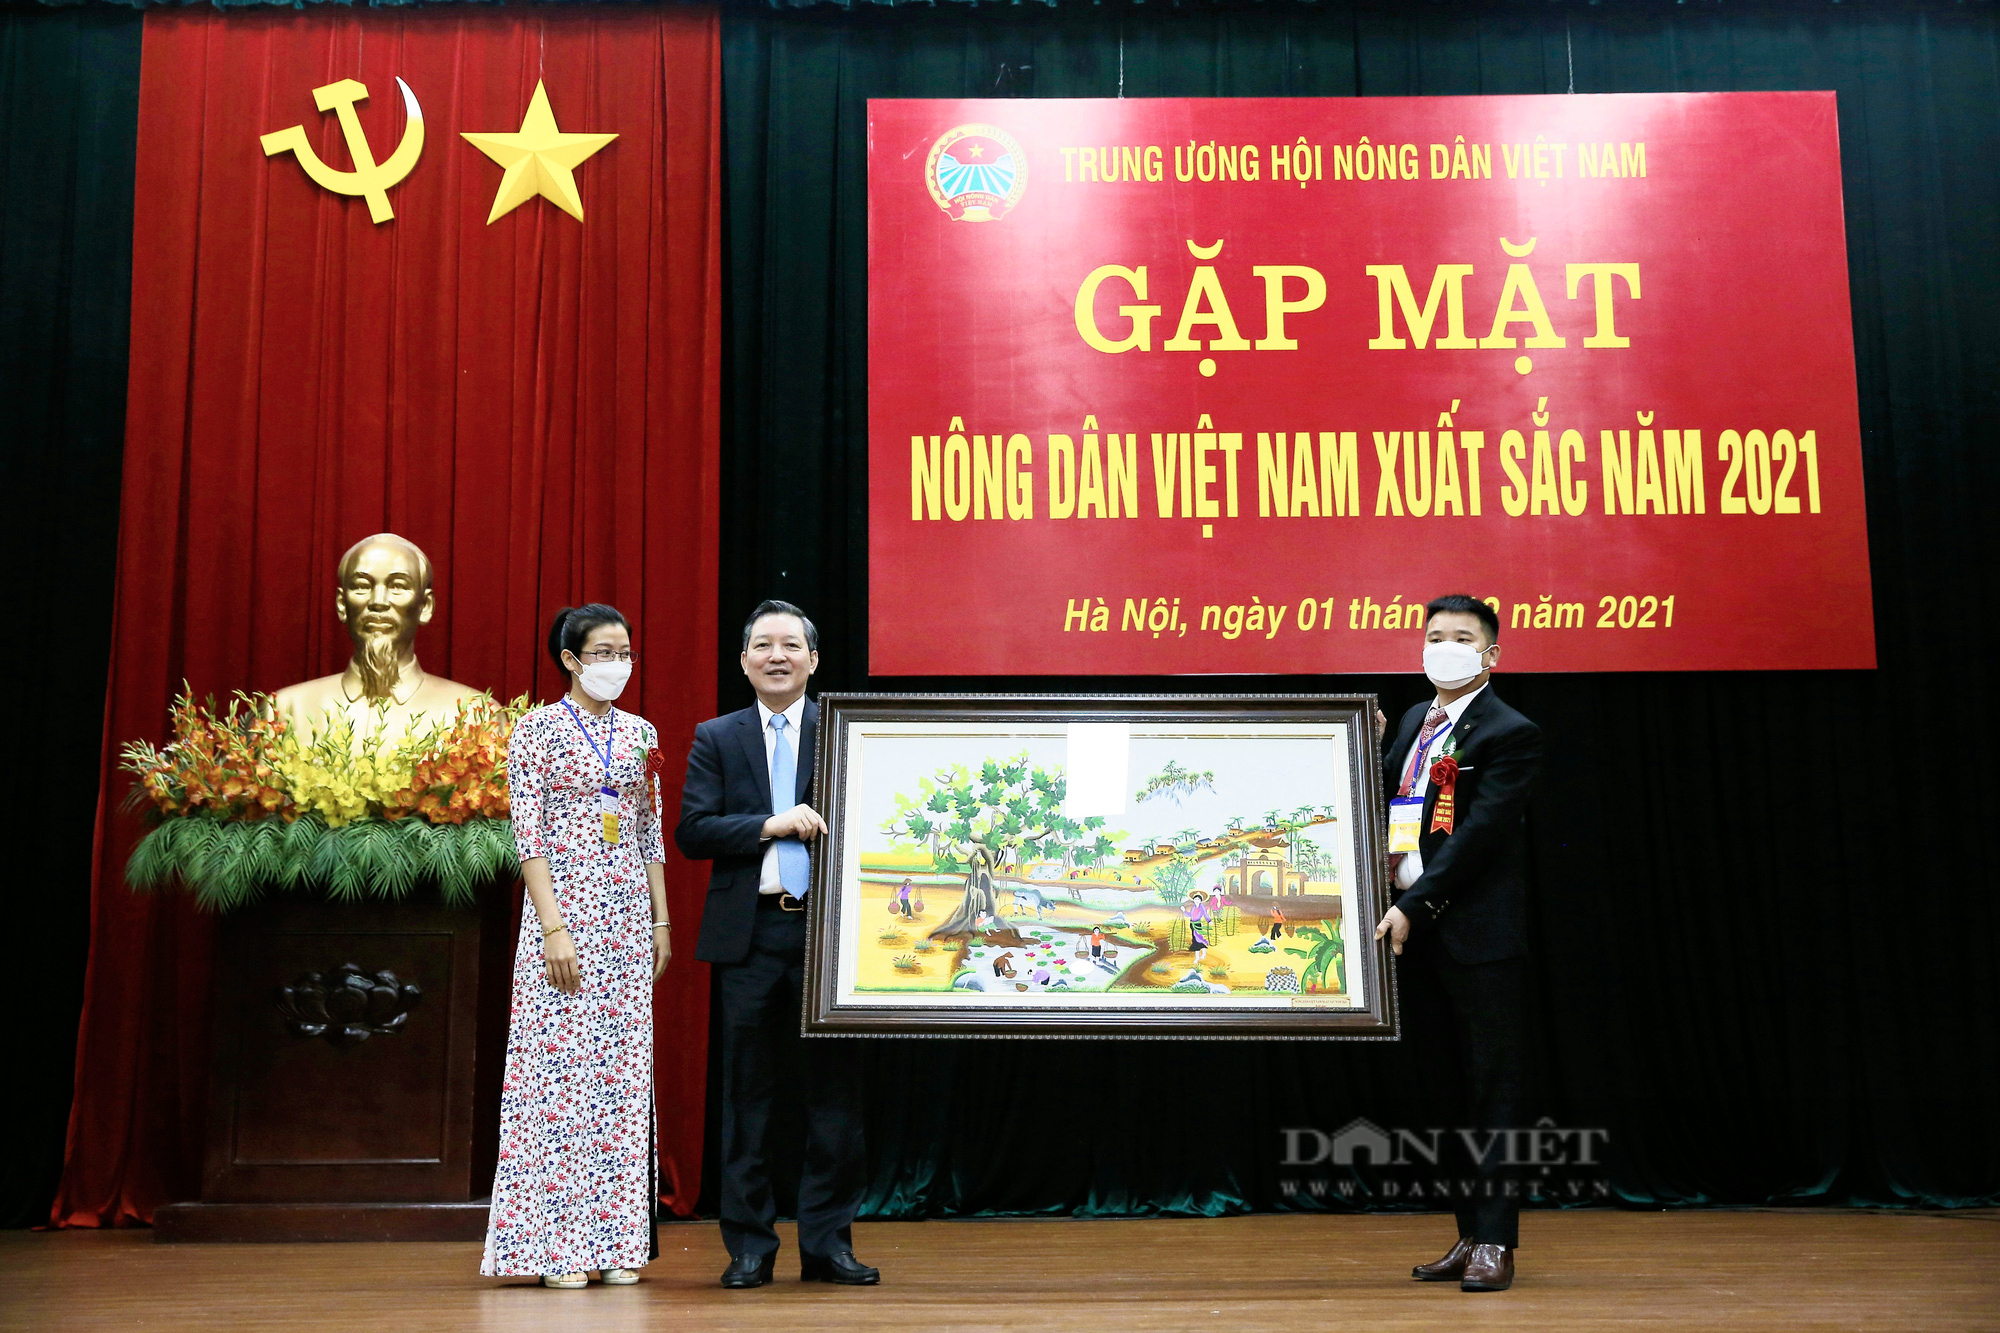 Ảnh: Thường trực Trung ương Hội Nông dân Việt Nam gặp mặt nông dân xuất sắc năm 2021 - Ảnh 11.